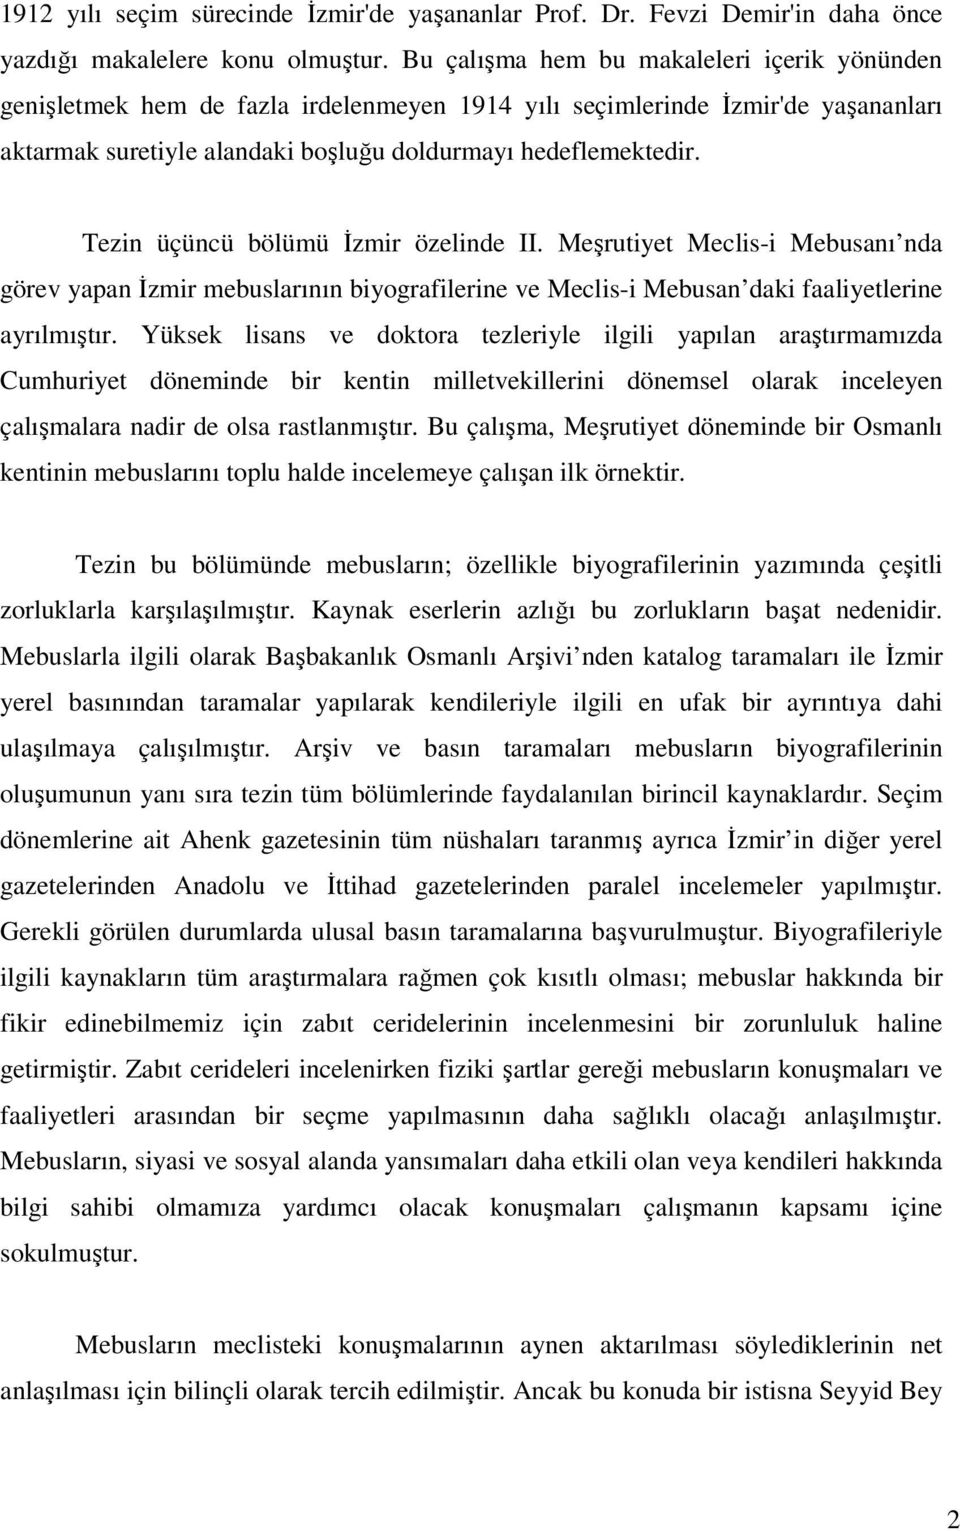 Tezin üçüncü bölümü İzmir özelinde II. Meşrutiyet Meclis-i Mebusanı nda görev yapan İzmir mebuslarının biyografilerine ve Meclis-i Mebusan daki faaliyetlerine ayrılmıştır.